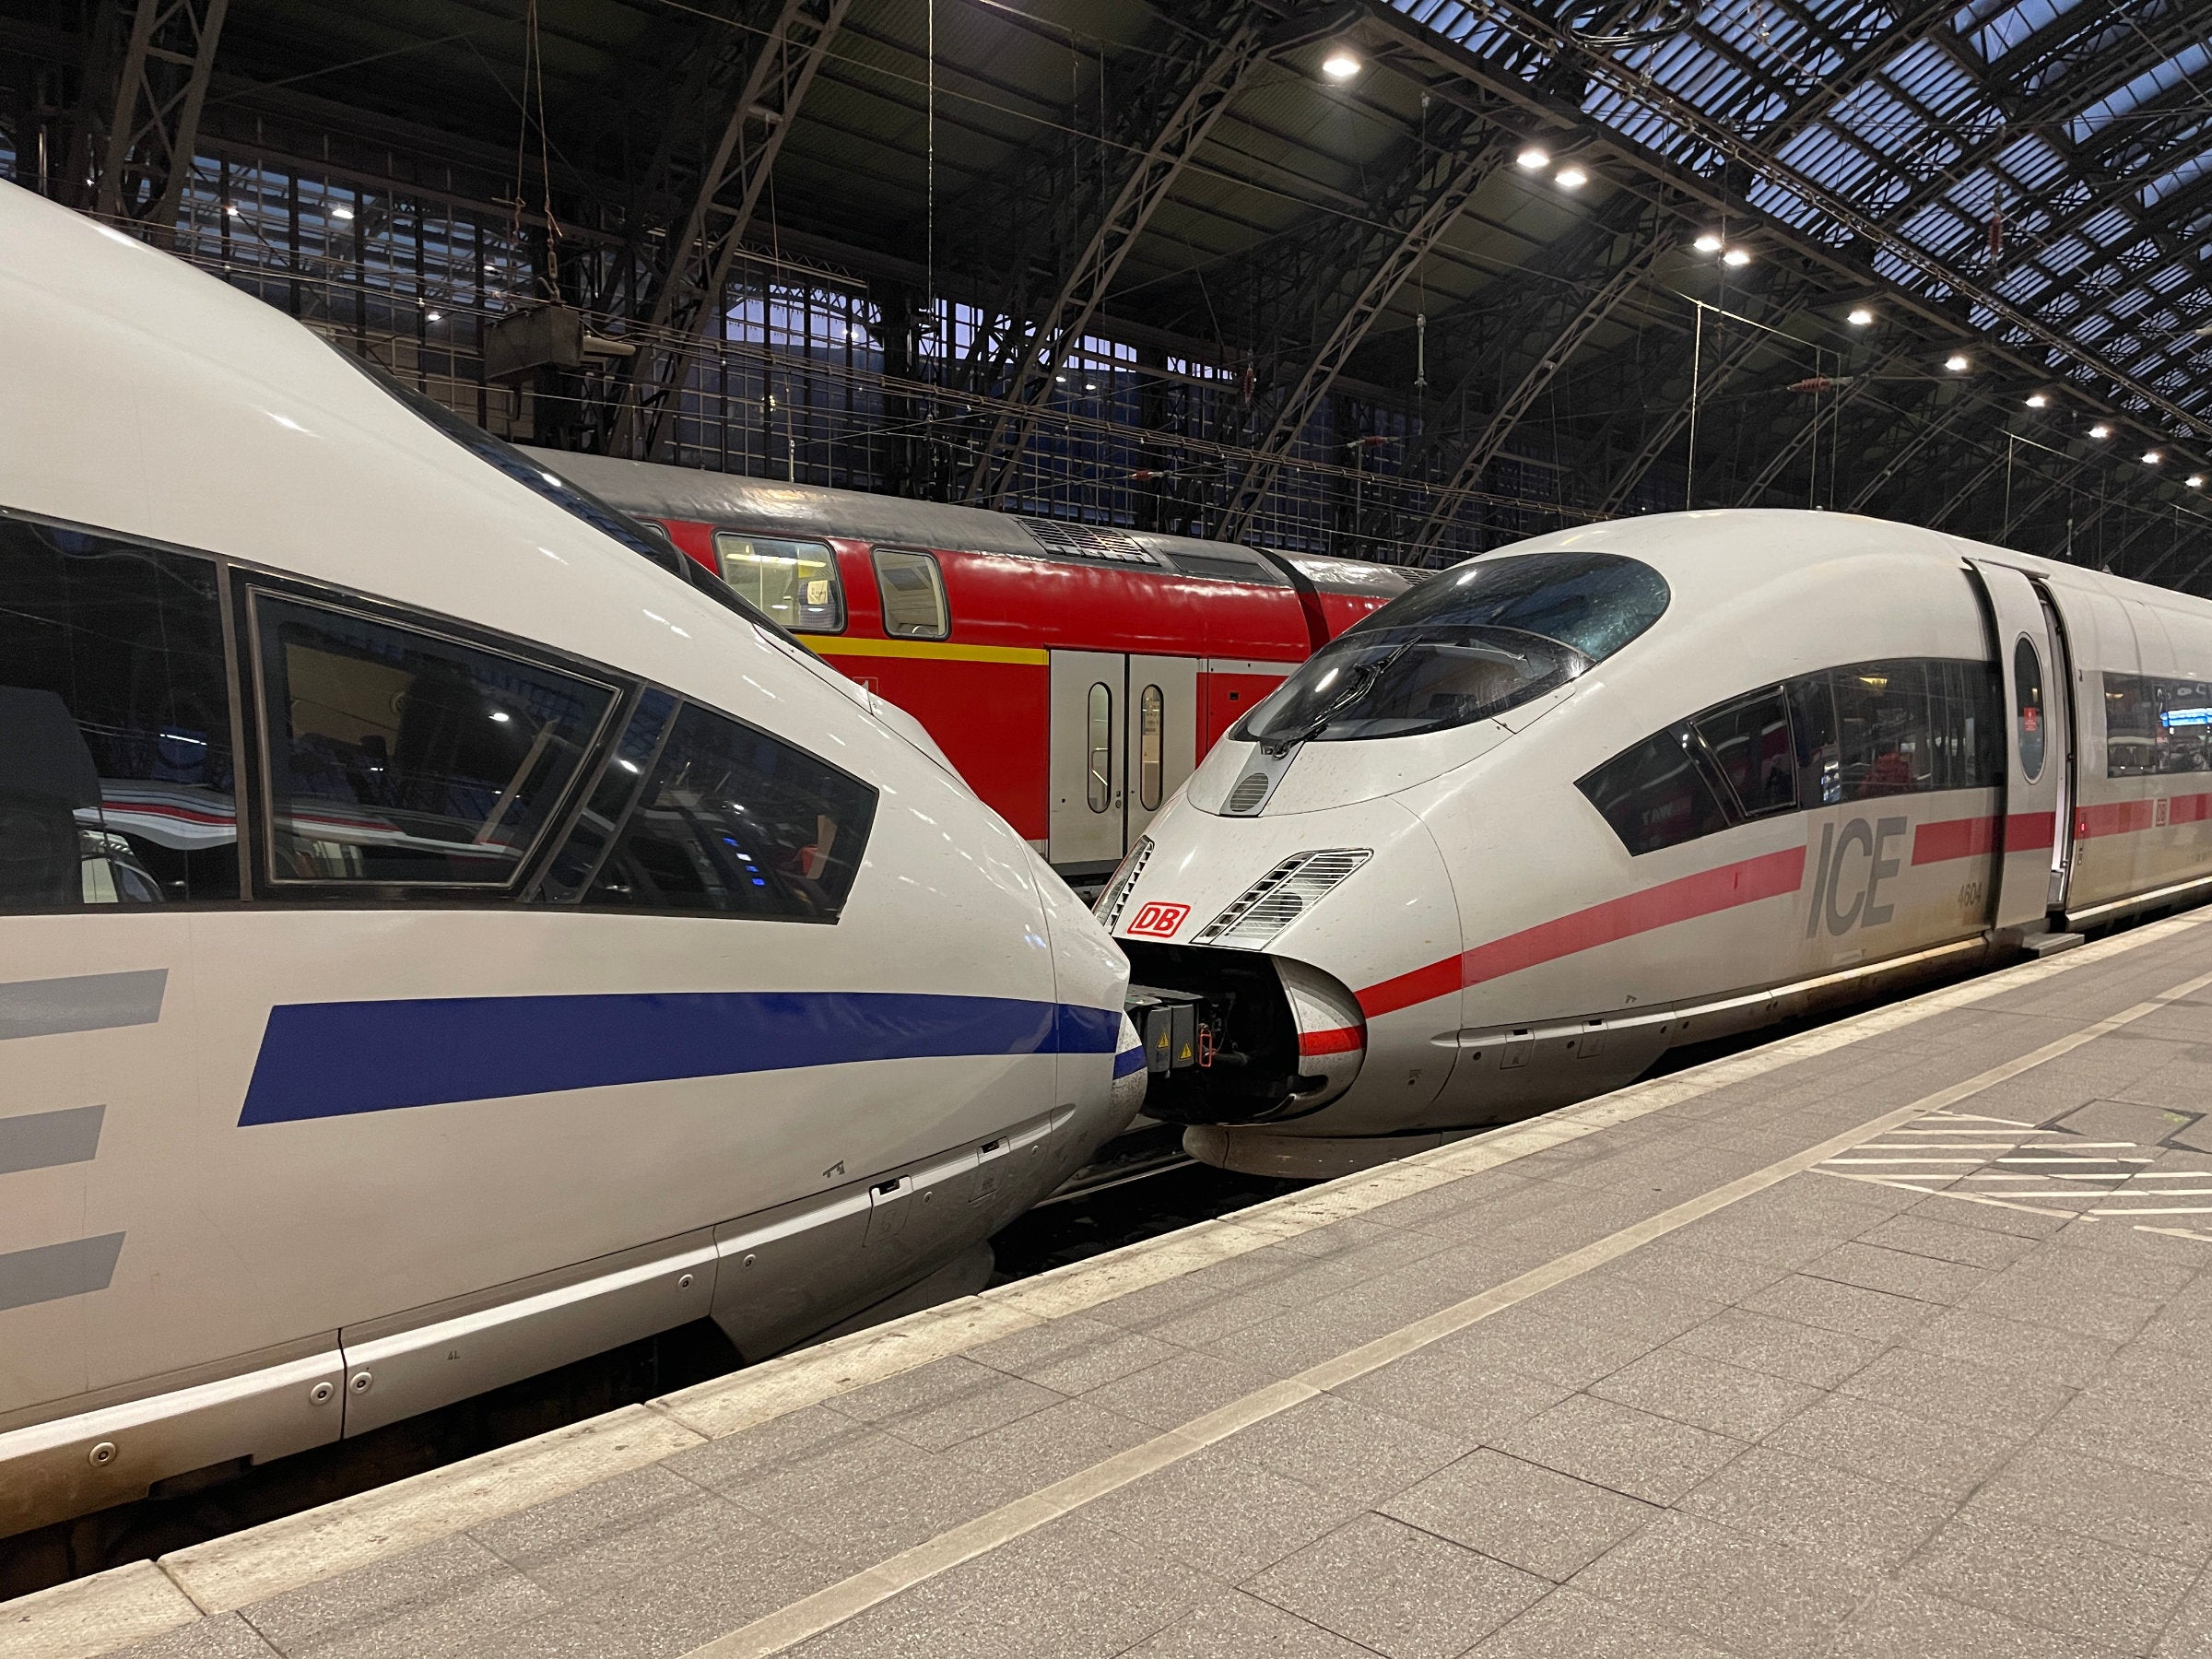 #50 Jahre Interrail-Ticket: Bahn-Flatrate mit riesigem Rabatt erhältlich